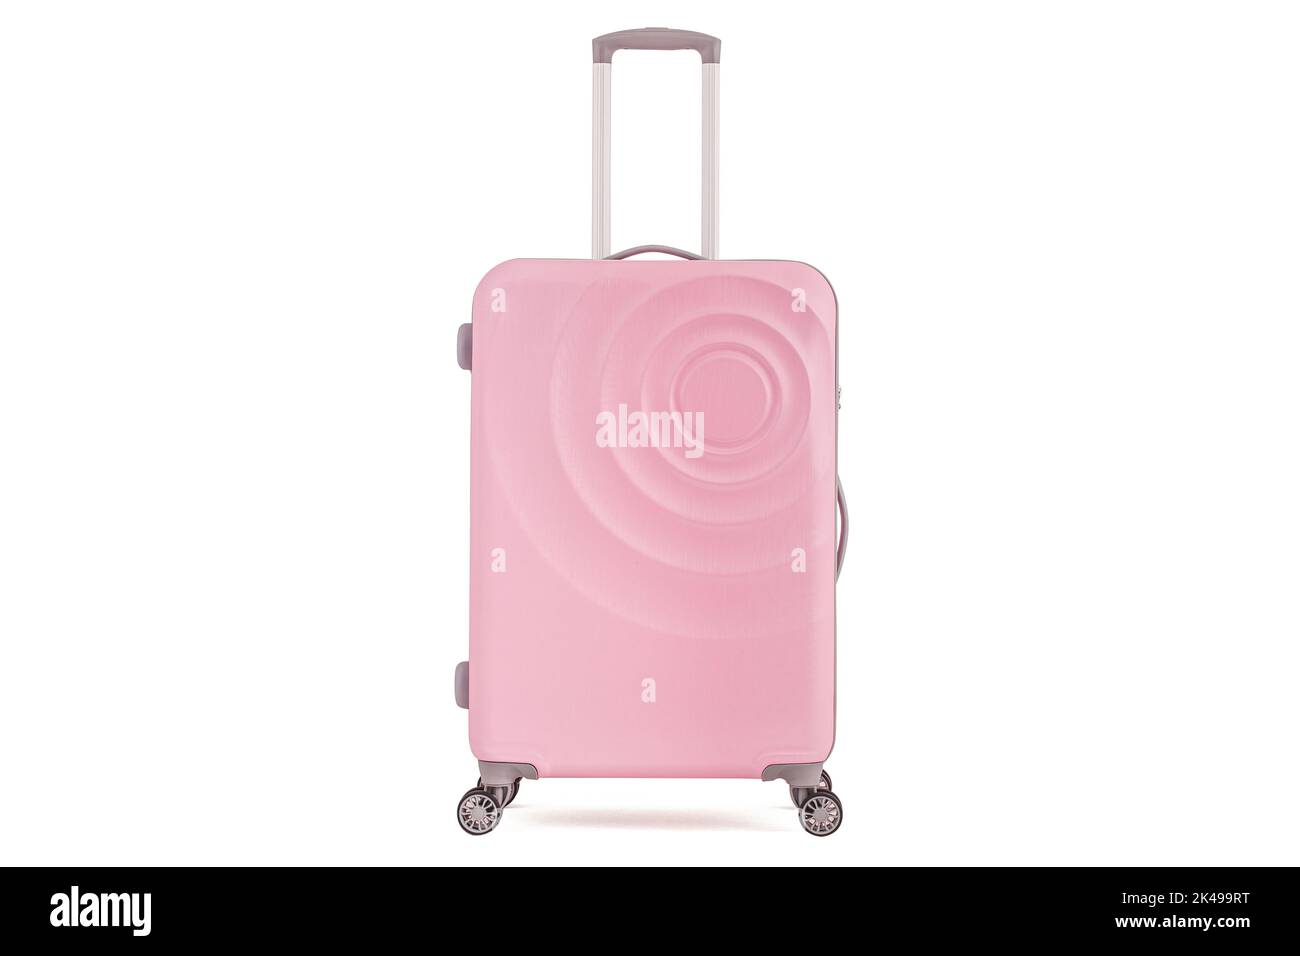 Girly pink suitcase isolated on white background Vacation luggage Stock Photo